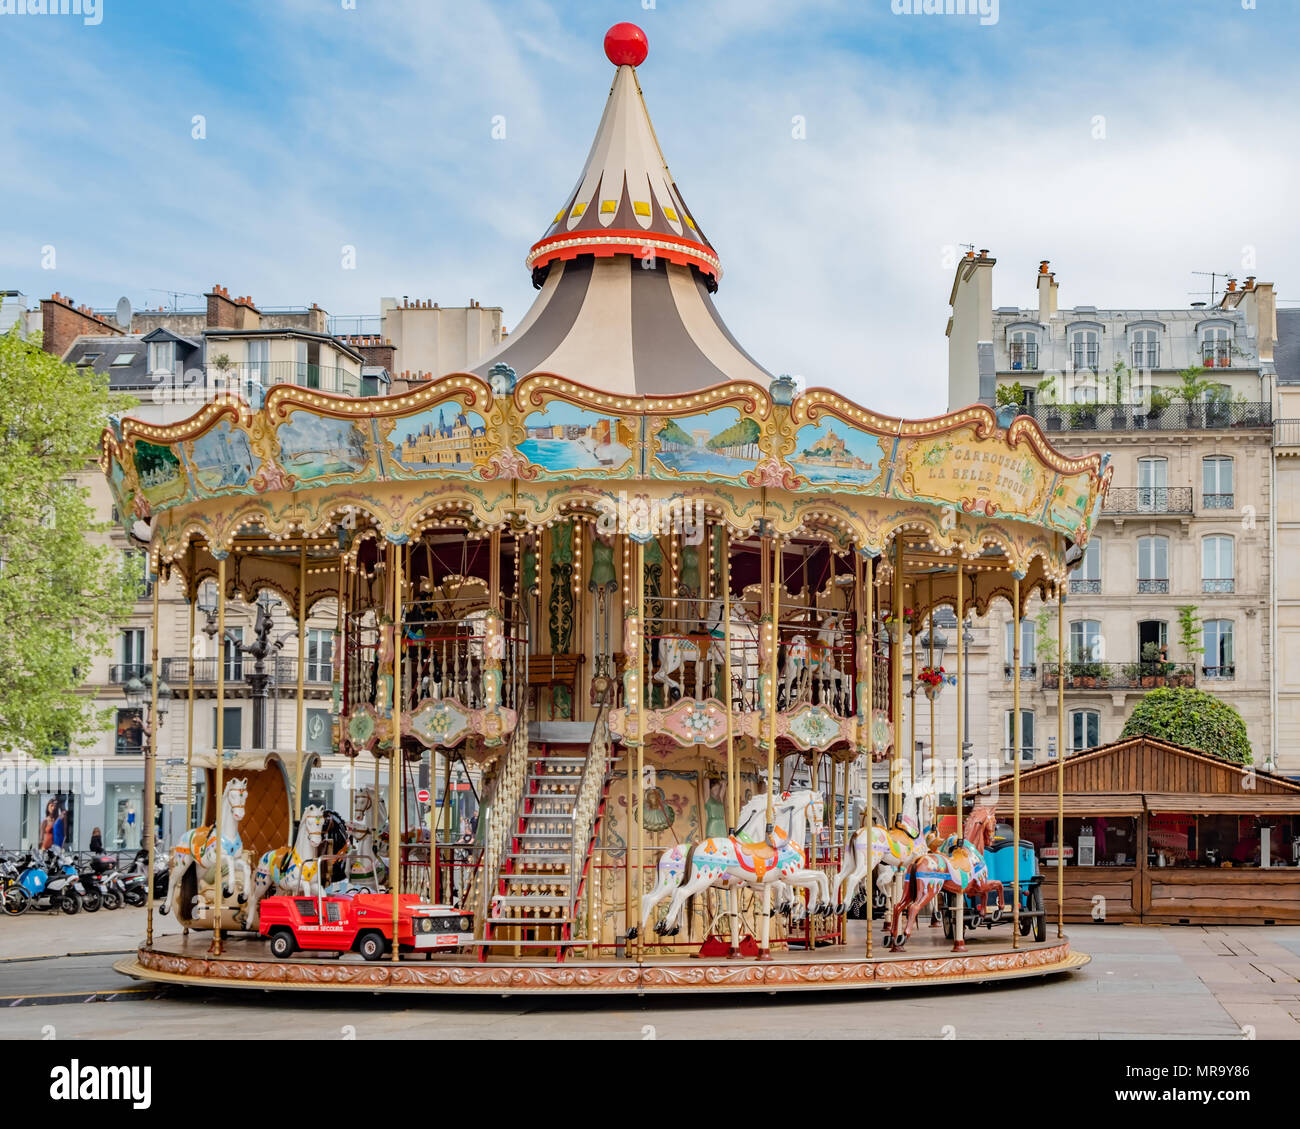 Belle et colorée carousel situé dans Paris France sur la place devant l'Hôtel de Ville. Banque D'Images